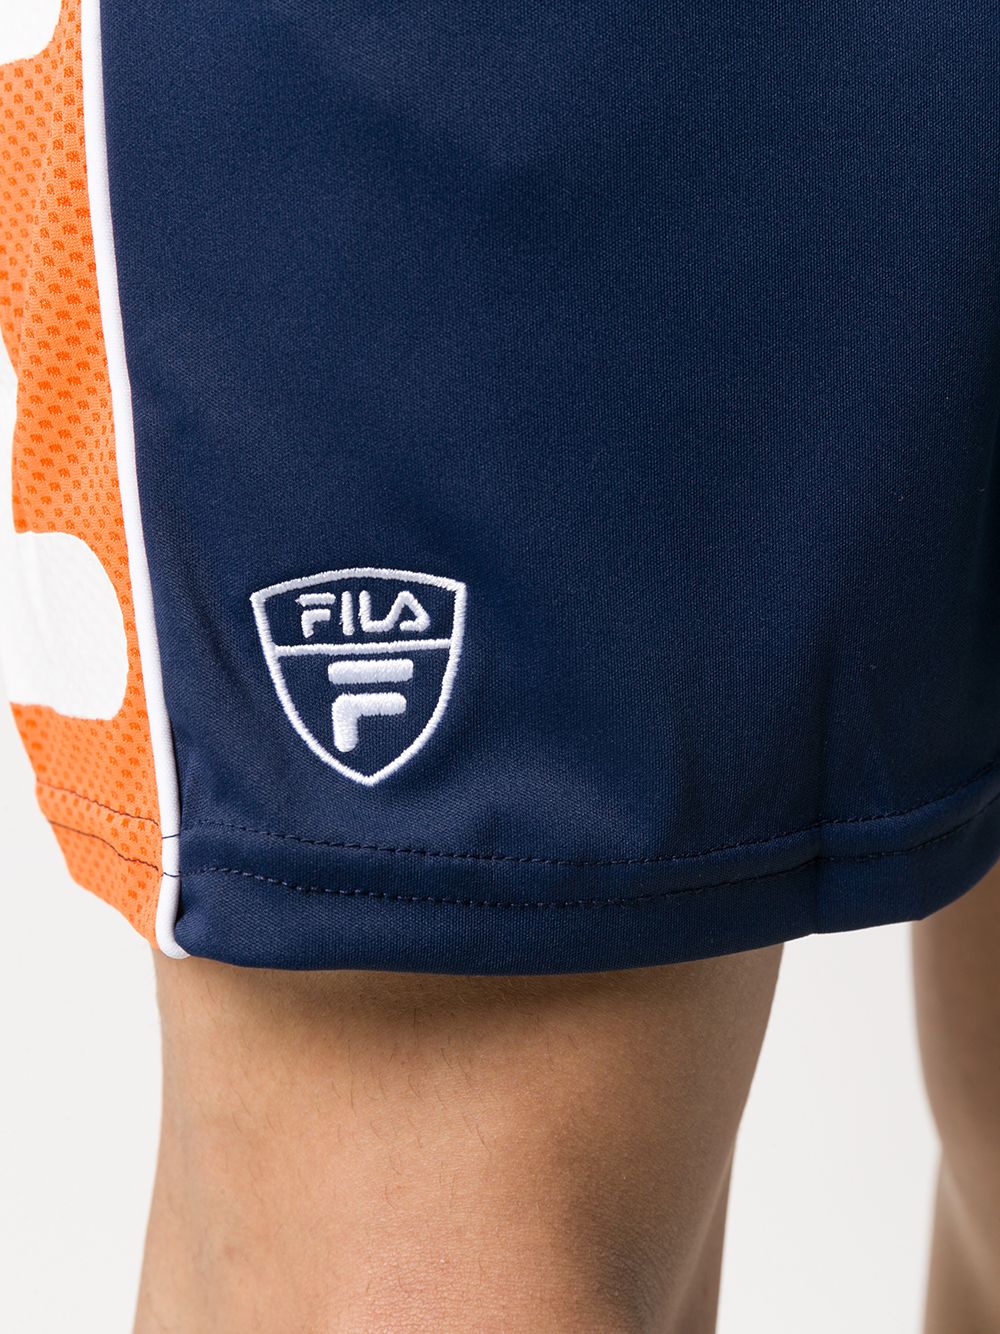 фото Fila спортивные шорты с логотипом